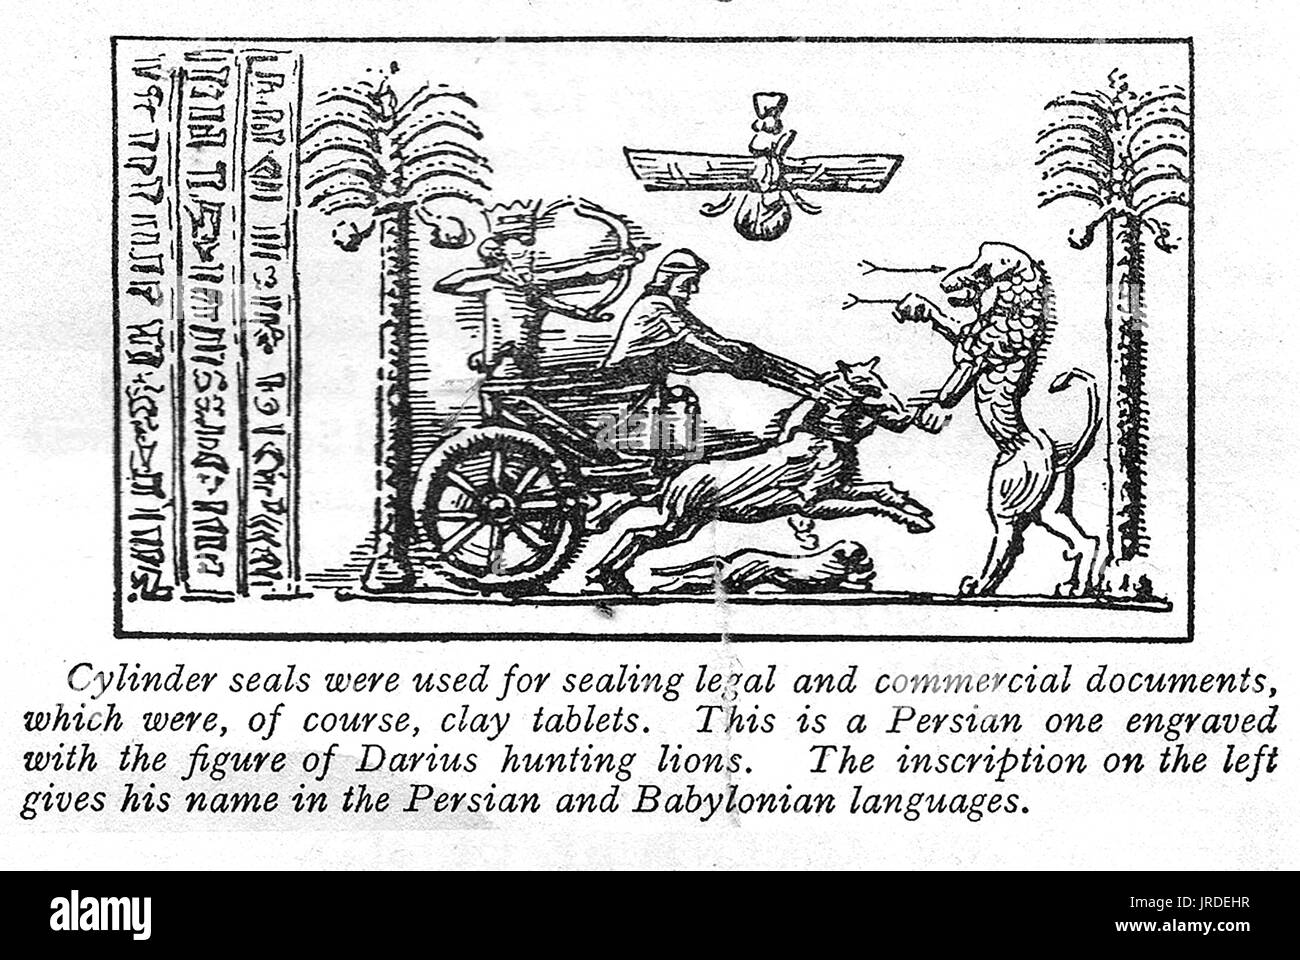 1926 illustrazione mostrante una persiana di tenuta del cilindro su una tavoletta di argilla con il persiano e babilonese iscrizioni & foto di Dario caccia i Lions in un carro Foto Stock